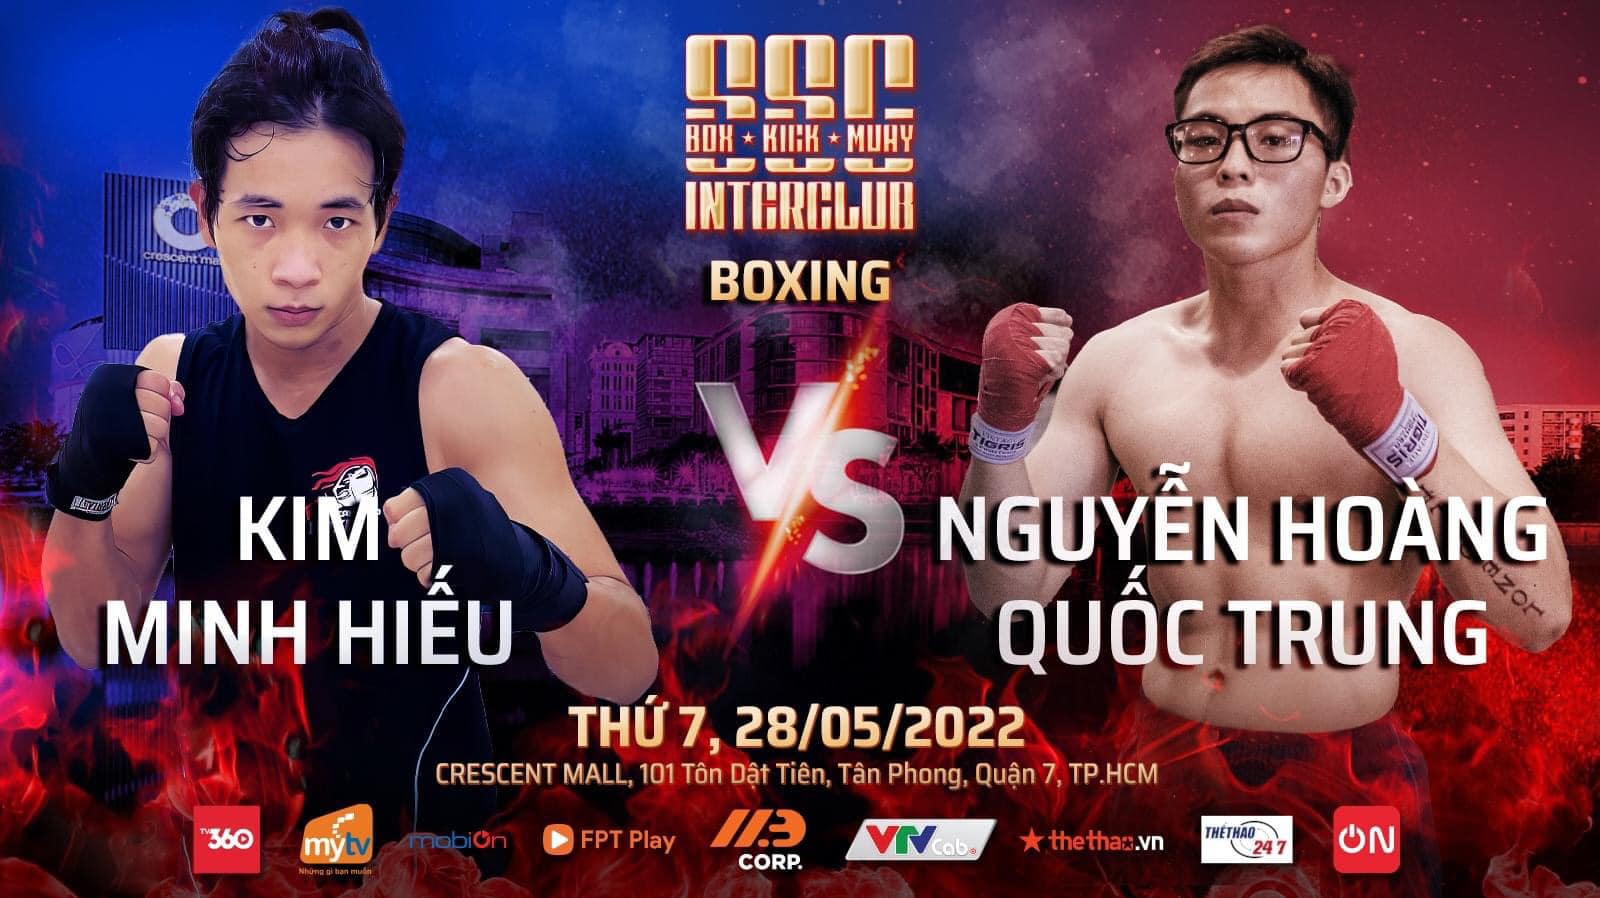 Sự kiện 3 môn võ Boxing, Kickboxing, Muay Thái tổ chức ở TPHCM ngày 28/5 - Ảnh 8